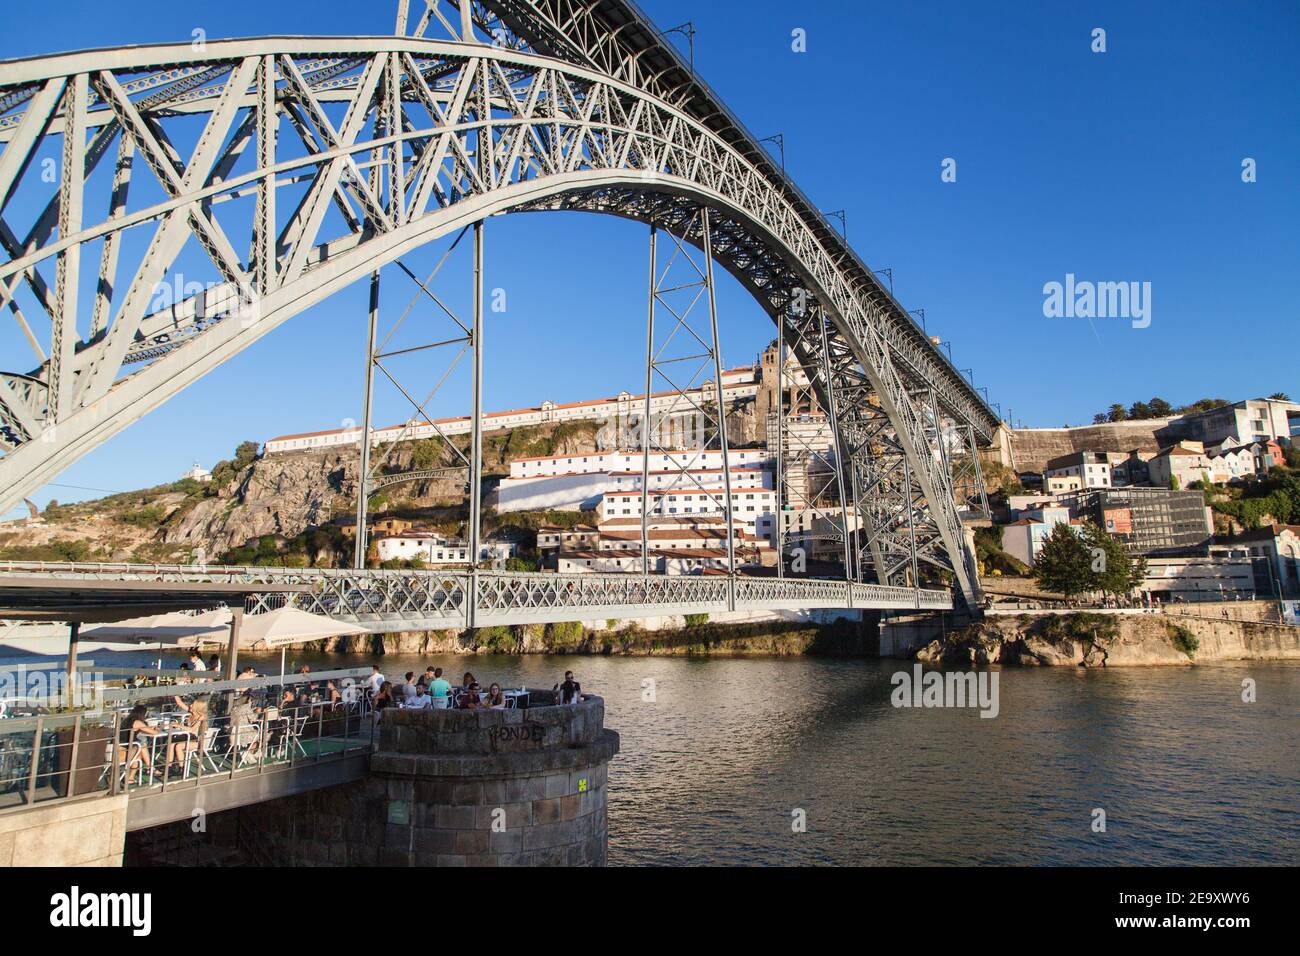 Oporto, Portugal - 23 de agosto de 2020: Puente Luís I en Oporto, Portugal. Foto de stock